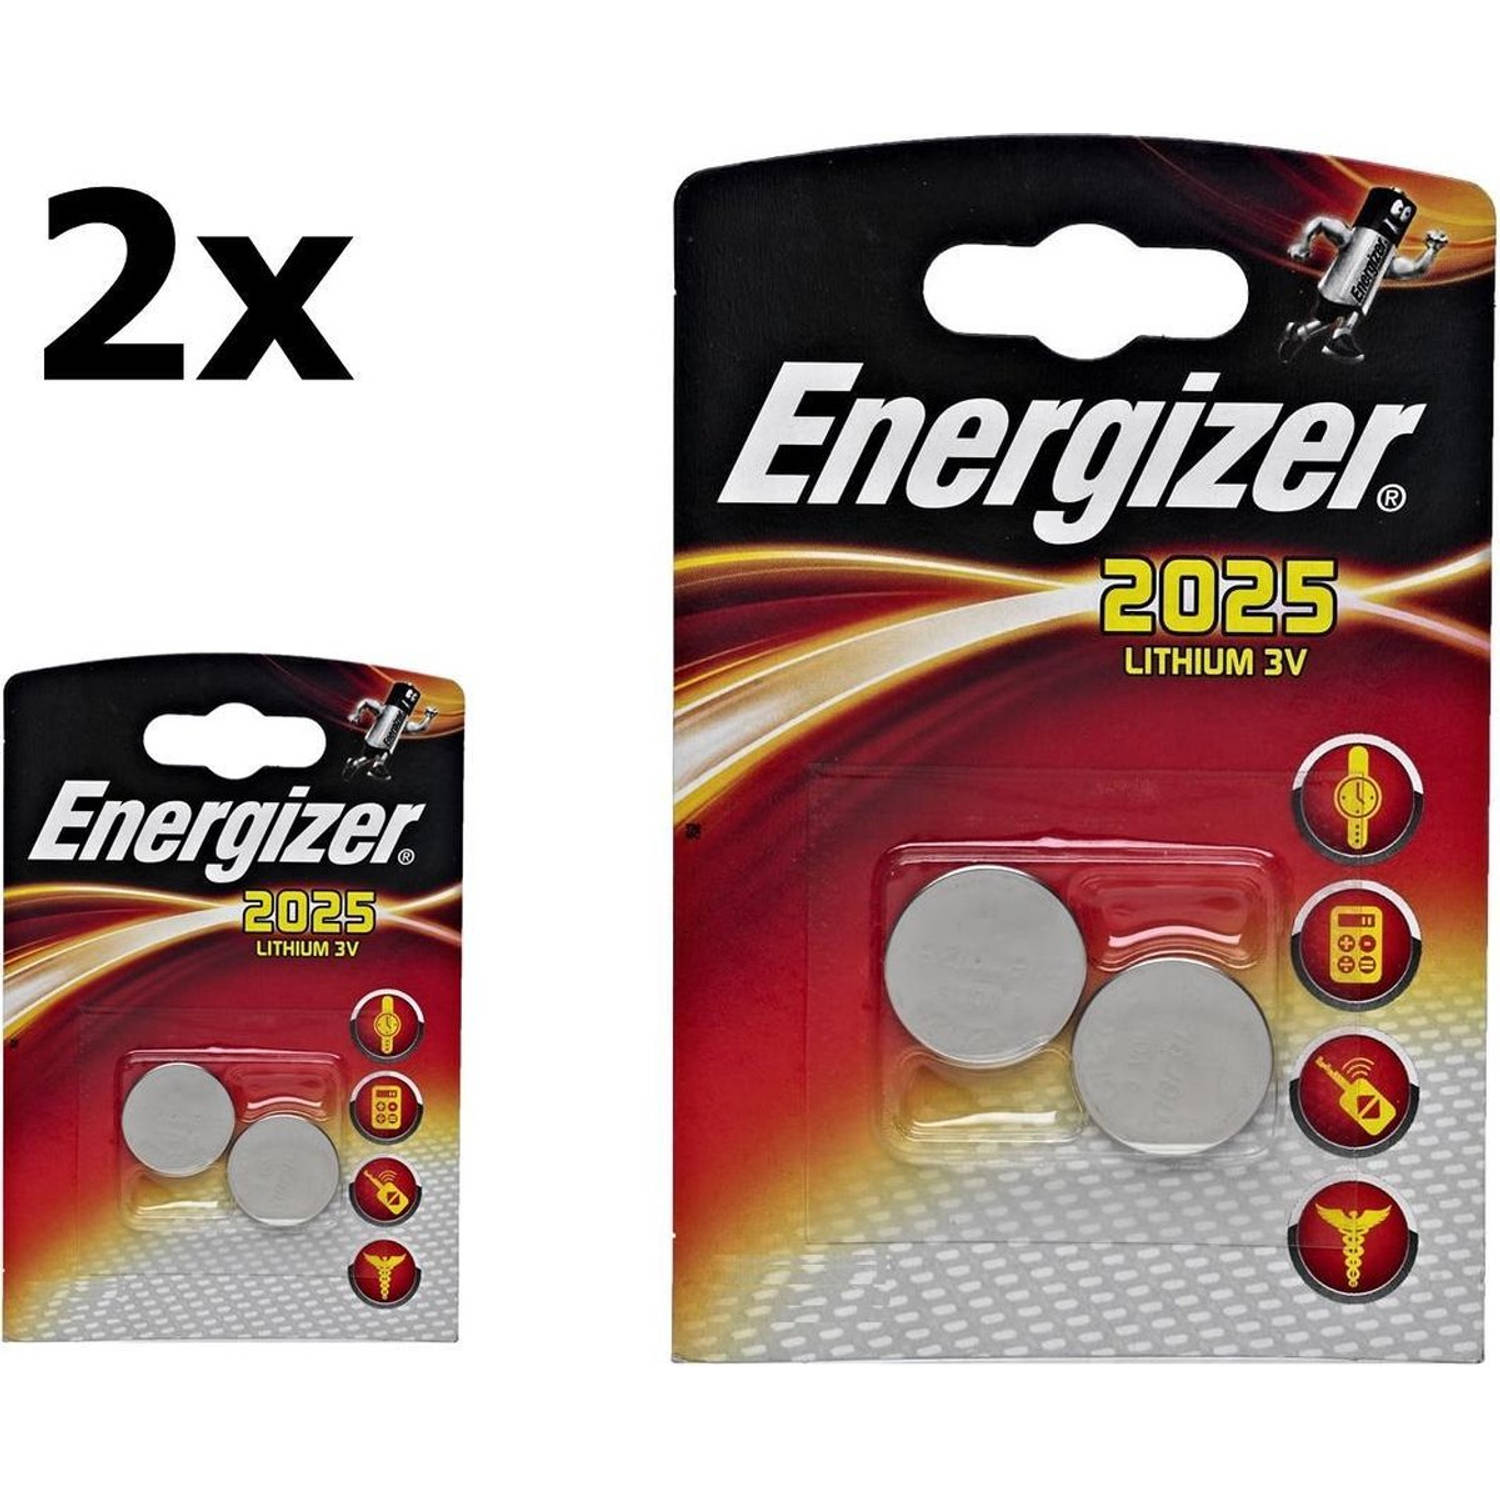 Gewoon Om toestemming te geven waarom niet 4 Stuks (2 Blisters a 2 st) Energizer CR2025 3v lithium knoopcel batterij |  Blokker